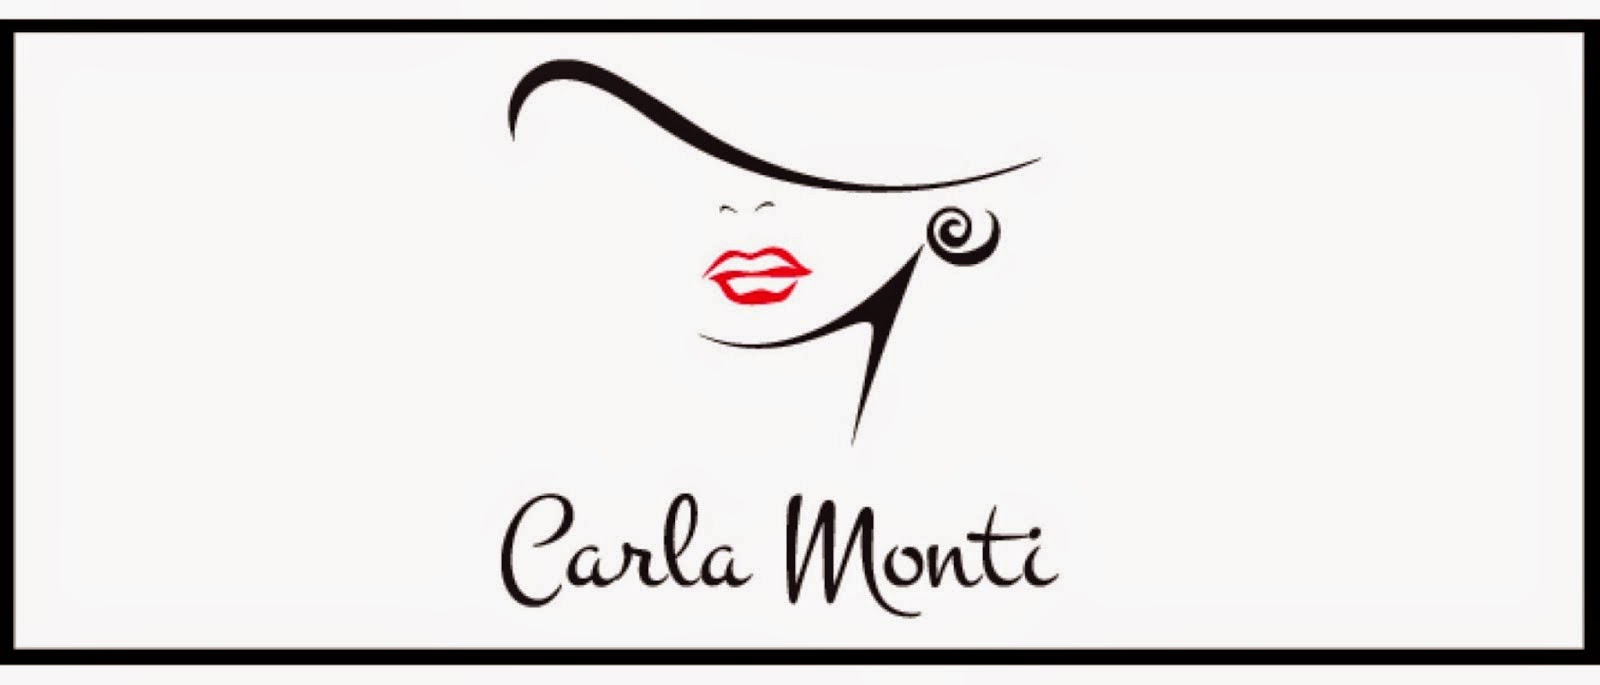 Mrs. Carla Monti